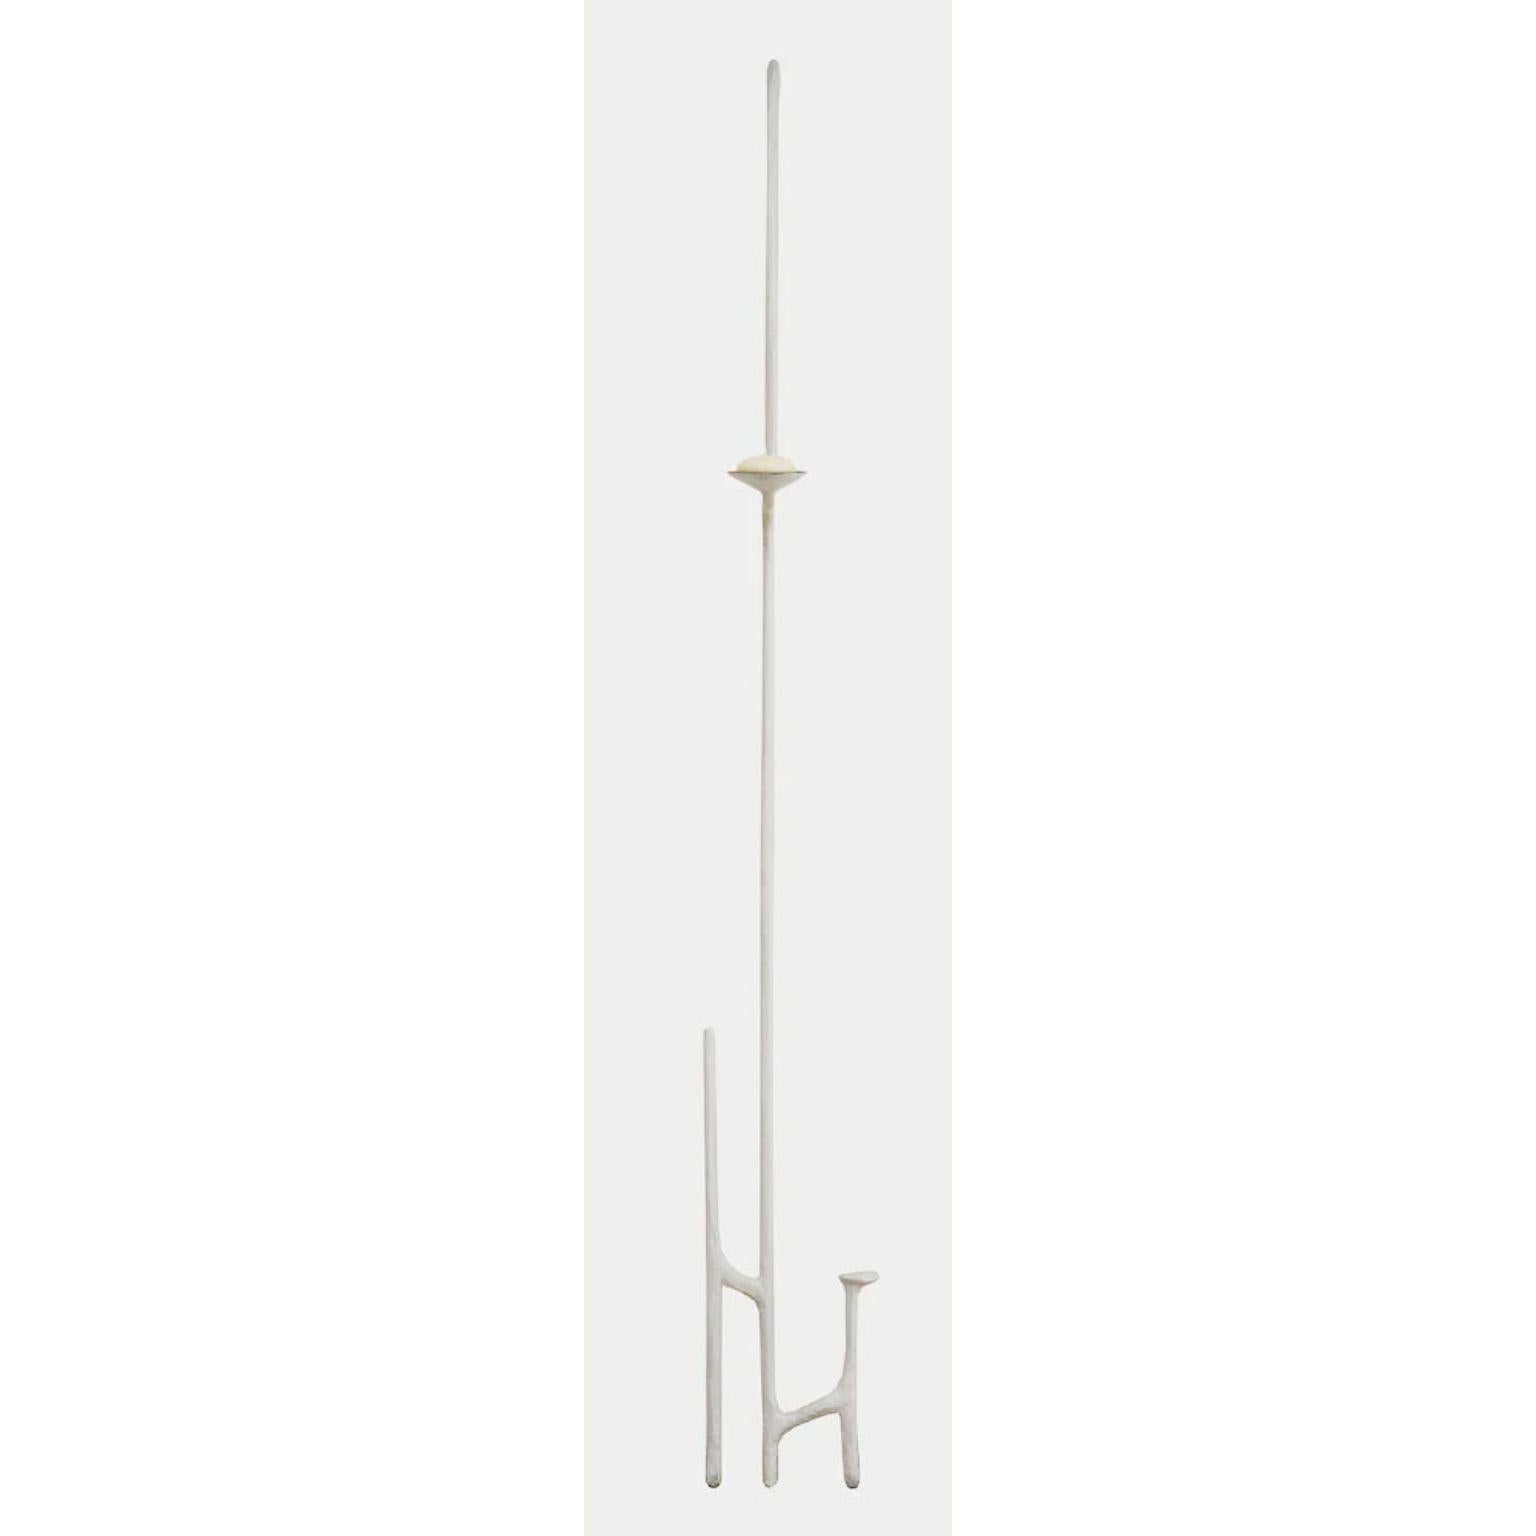 Chandelier penché en bronze blanc de Giacometti par Mary Brōgger
Dimensions : L 33 cm x P 5 cm x H 196 cm.
Matériaux : bronze patiné blanc.
Également disponible dans d'autres finitions et dimensions.

Mary Brōgger est une artiste de renommée